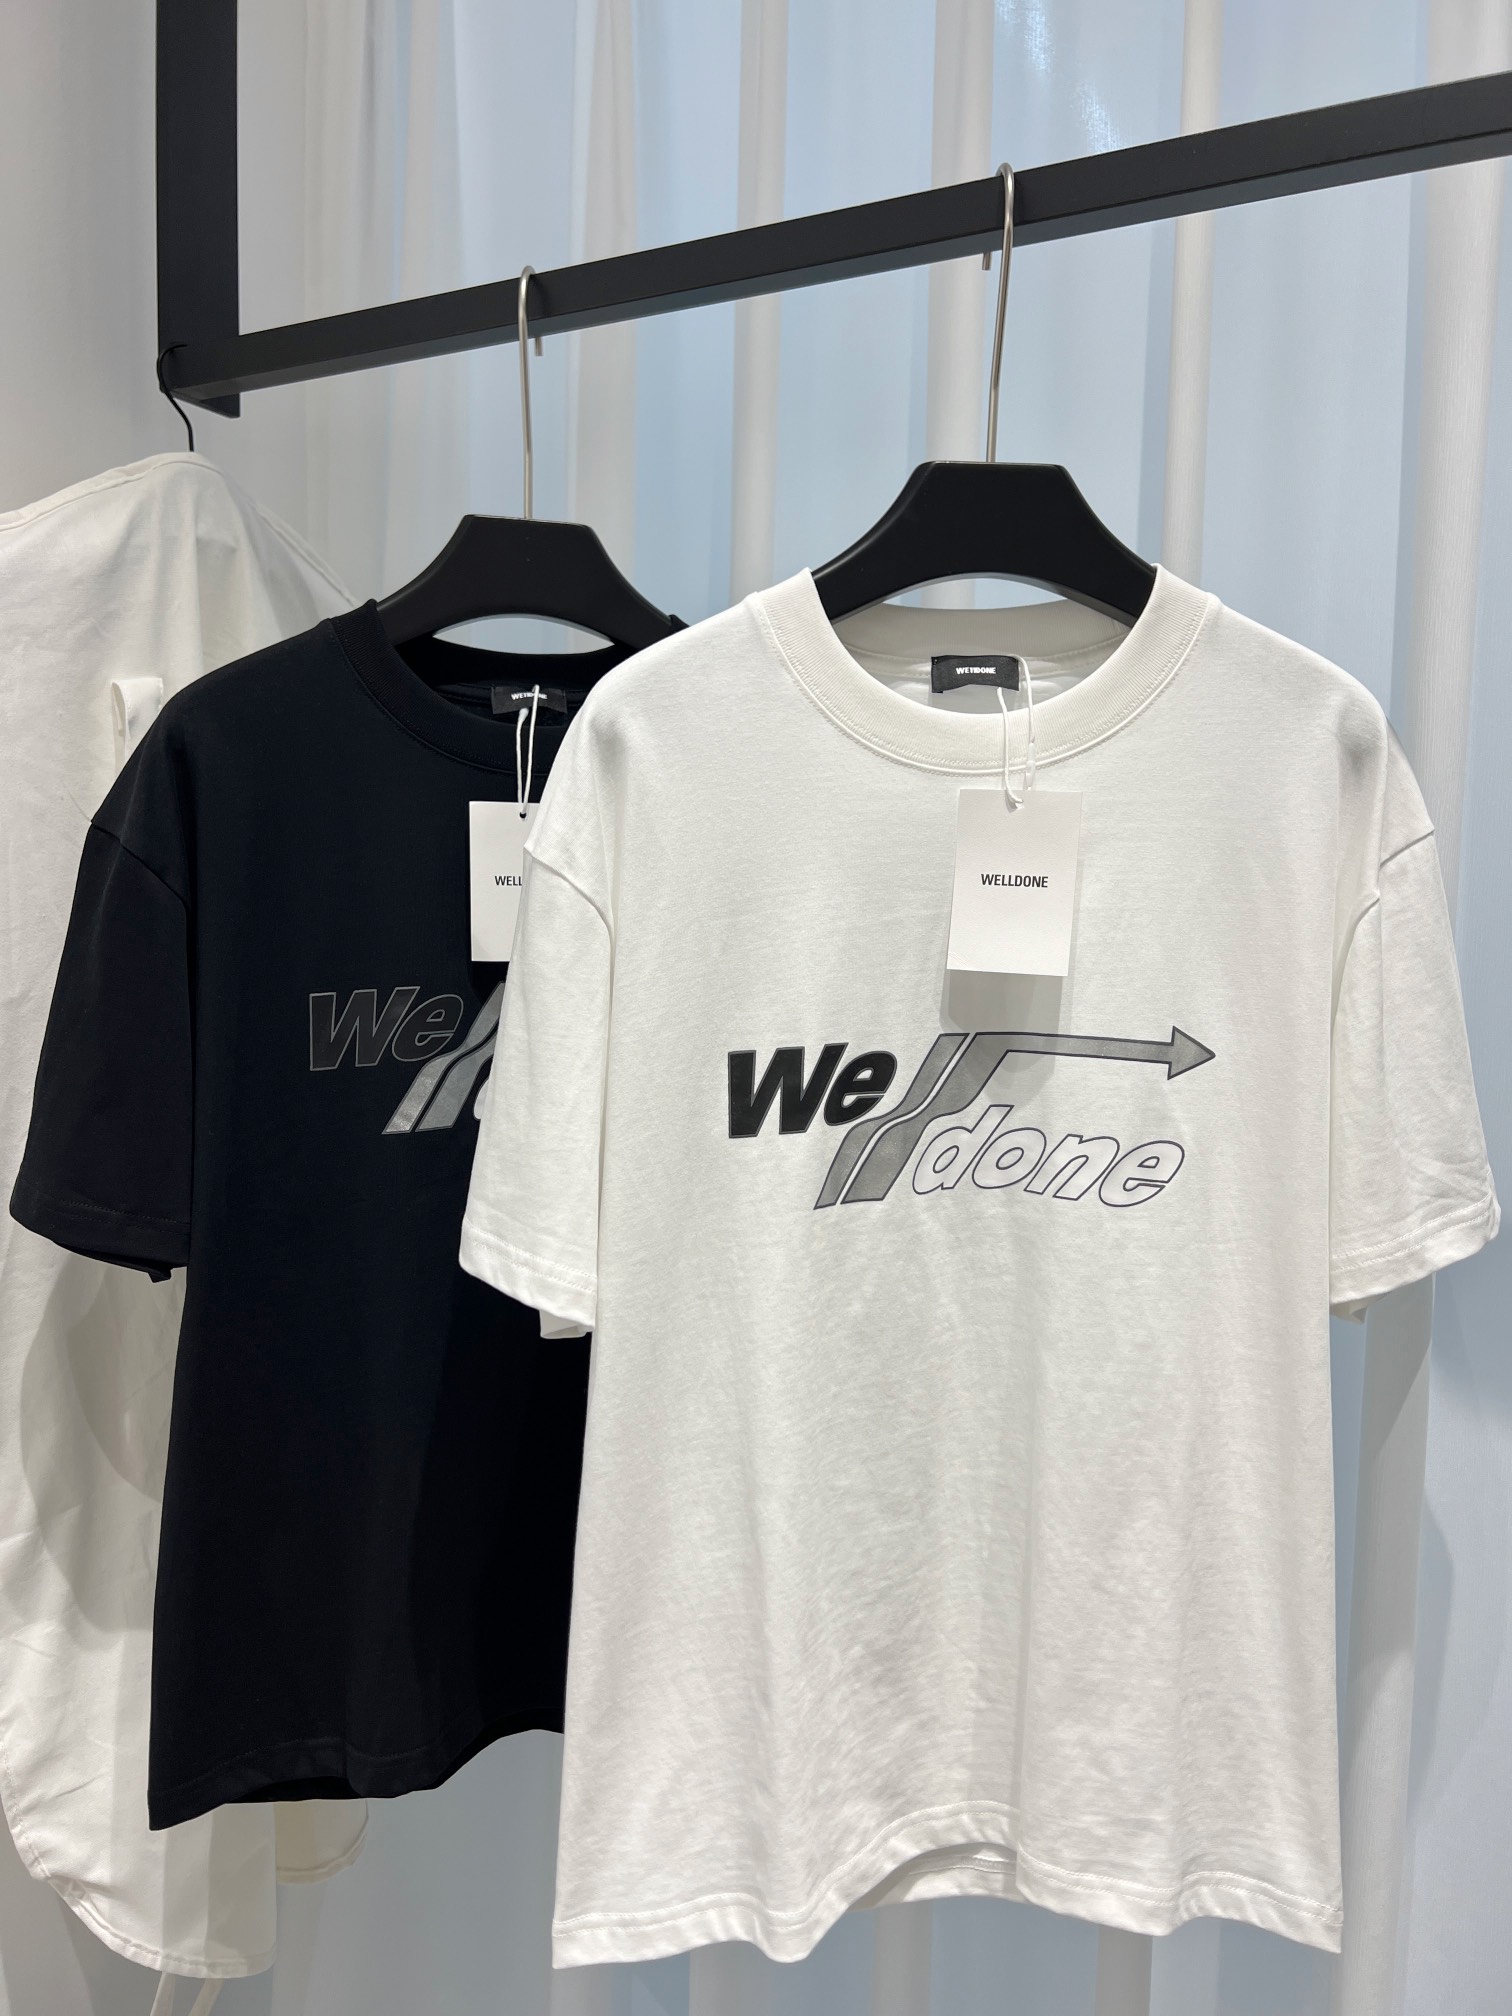 WE11DONE 限定販売 最高品質 ウェルダン tシャツ激安通販 半袖 トップス 純綿 柔らかい ロゴプリント ホワイト_1